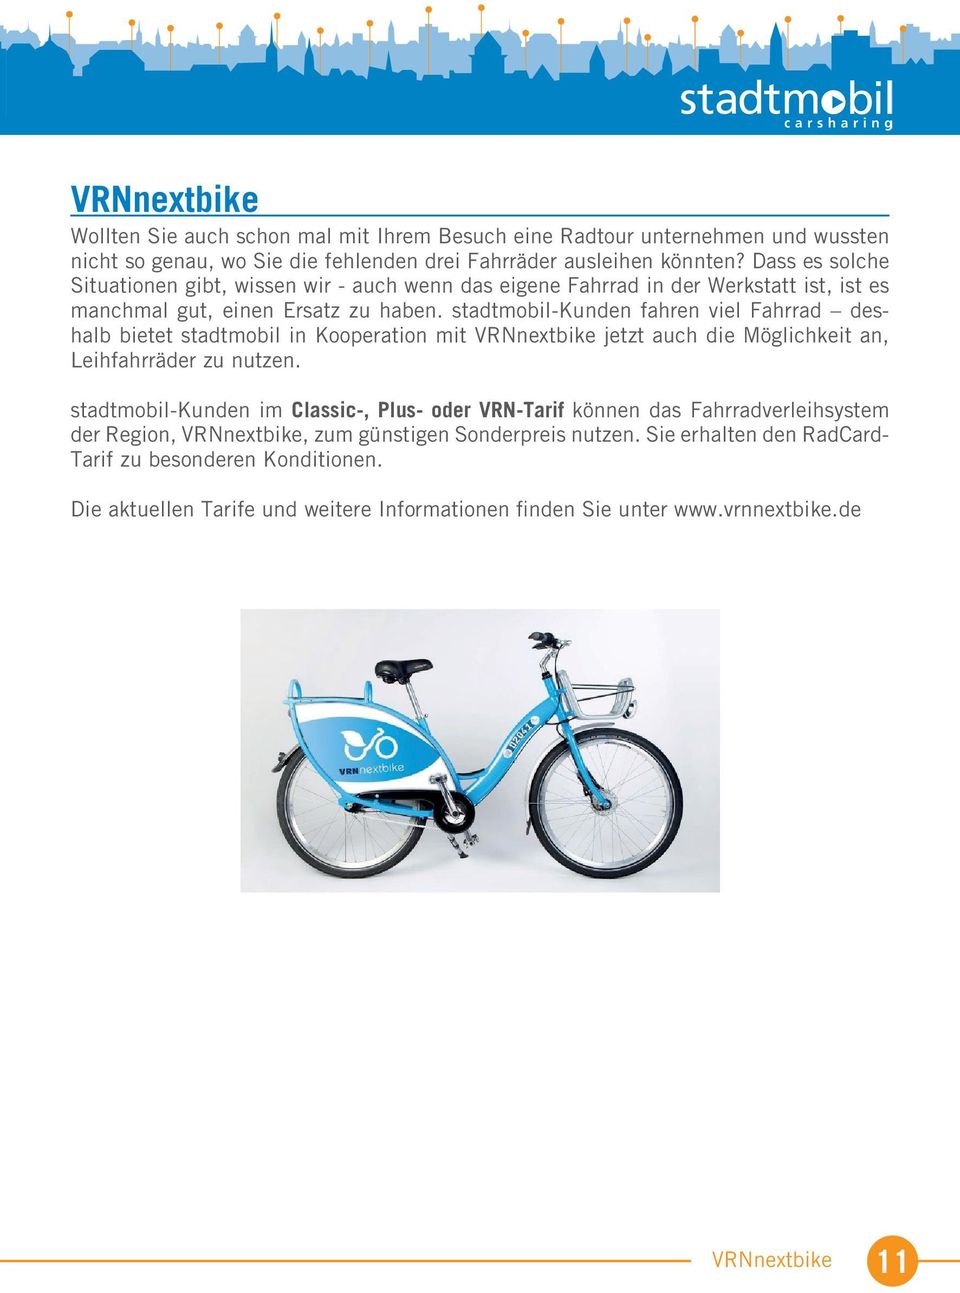 stadtmobil-kunden fahren viel Fahrrad deshalb bietet stadtmobil in Kooperation mit VRNnextbike jetzt auch die Möglichkeit an, Leihfahrräder zu nutzen.